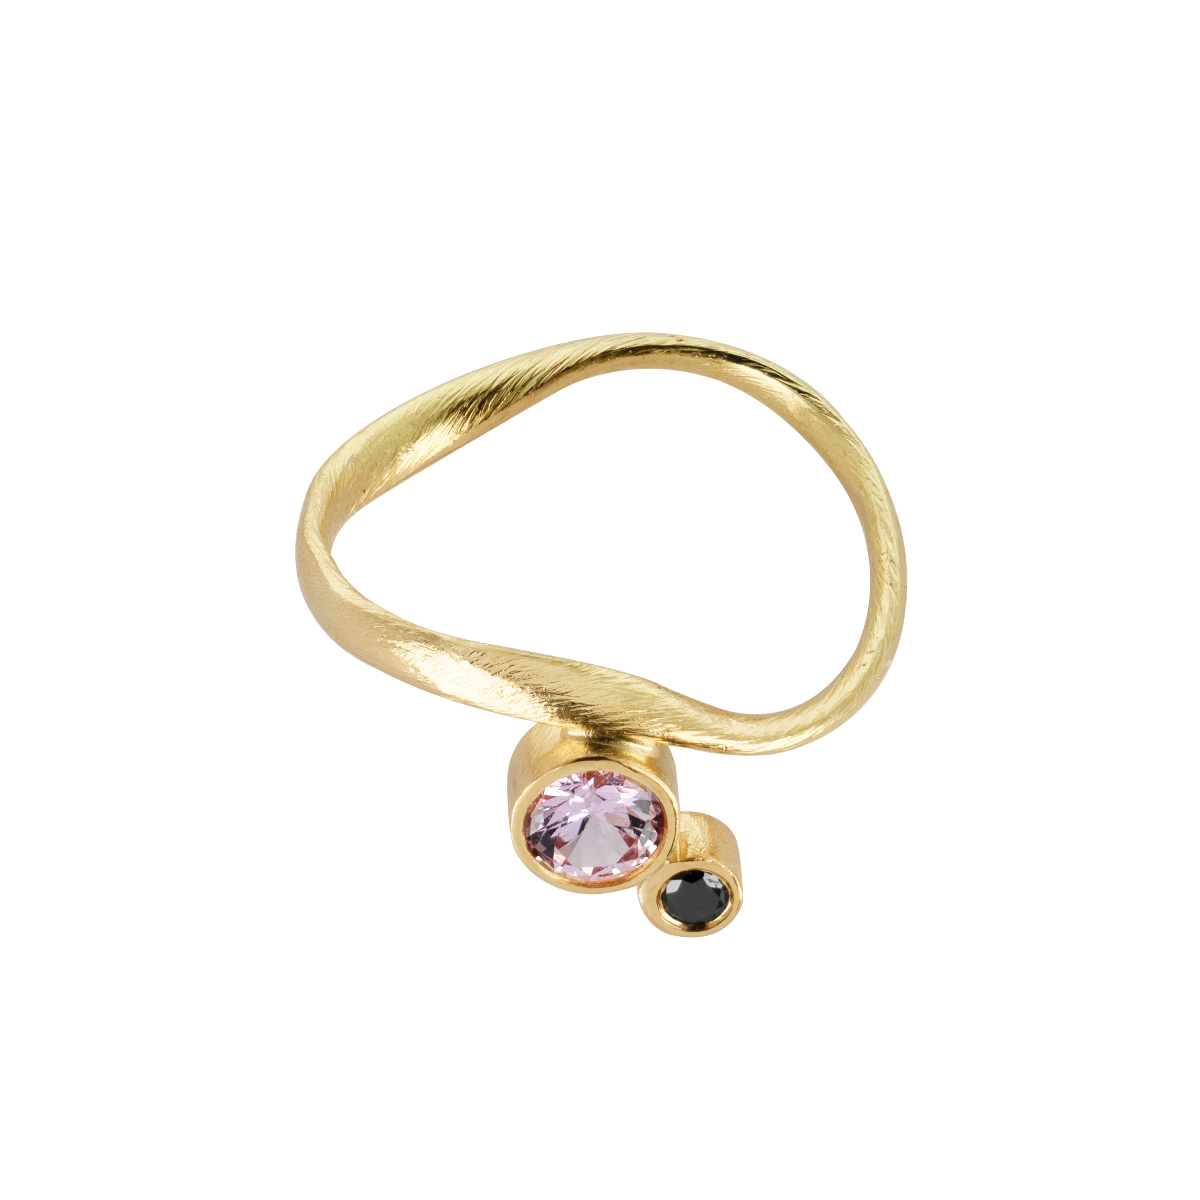 Flair ring i 18kt. guld, lyserød safir og sort diamant